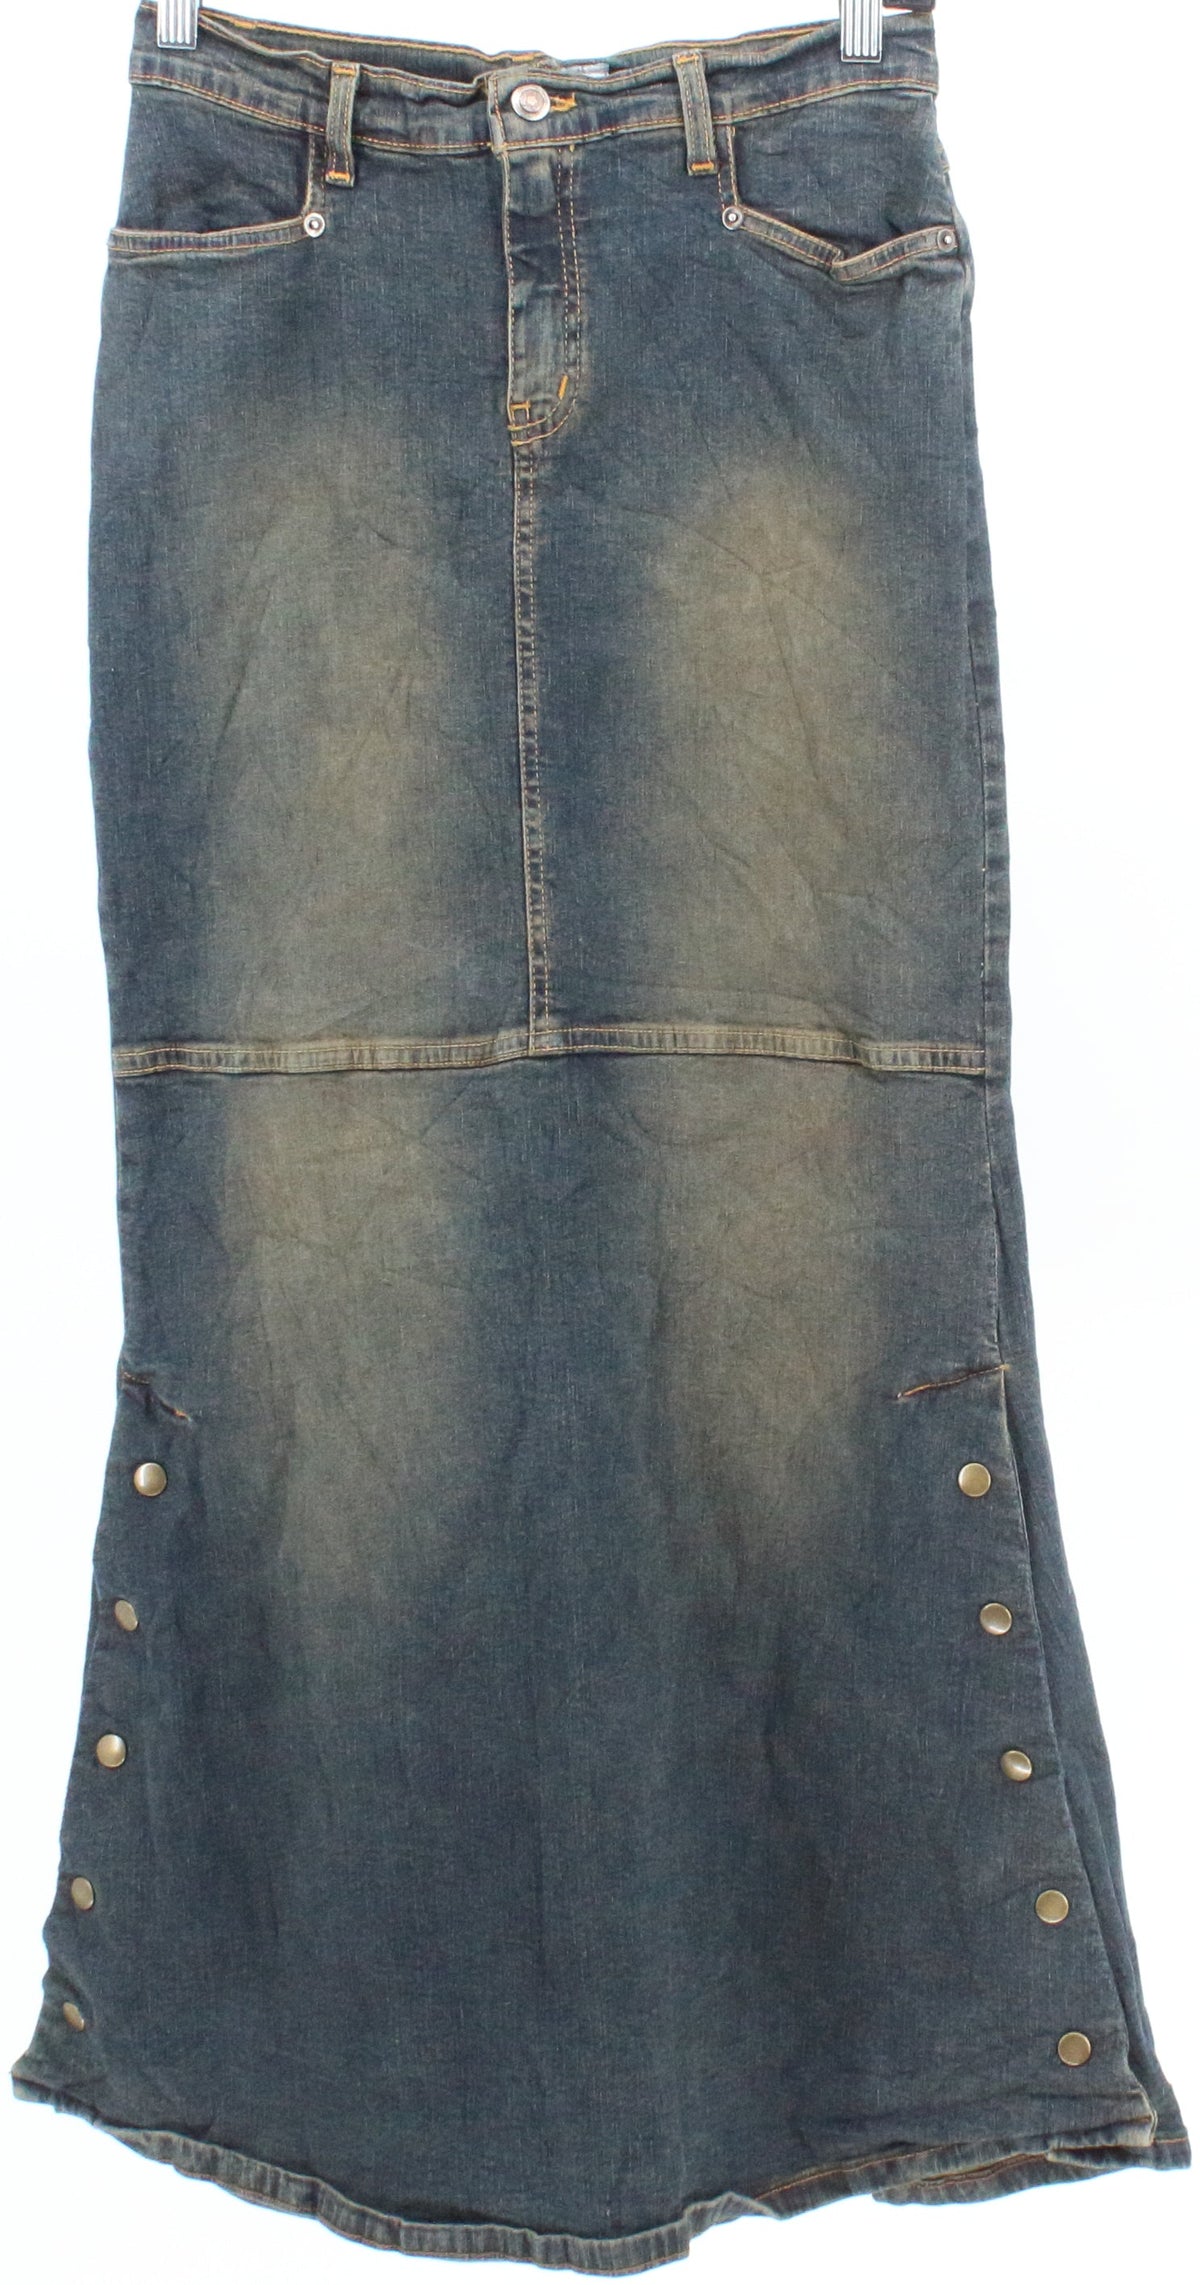 Santa Barbara Clothing Co. Long Denim Skirt